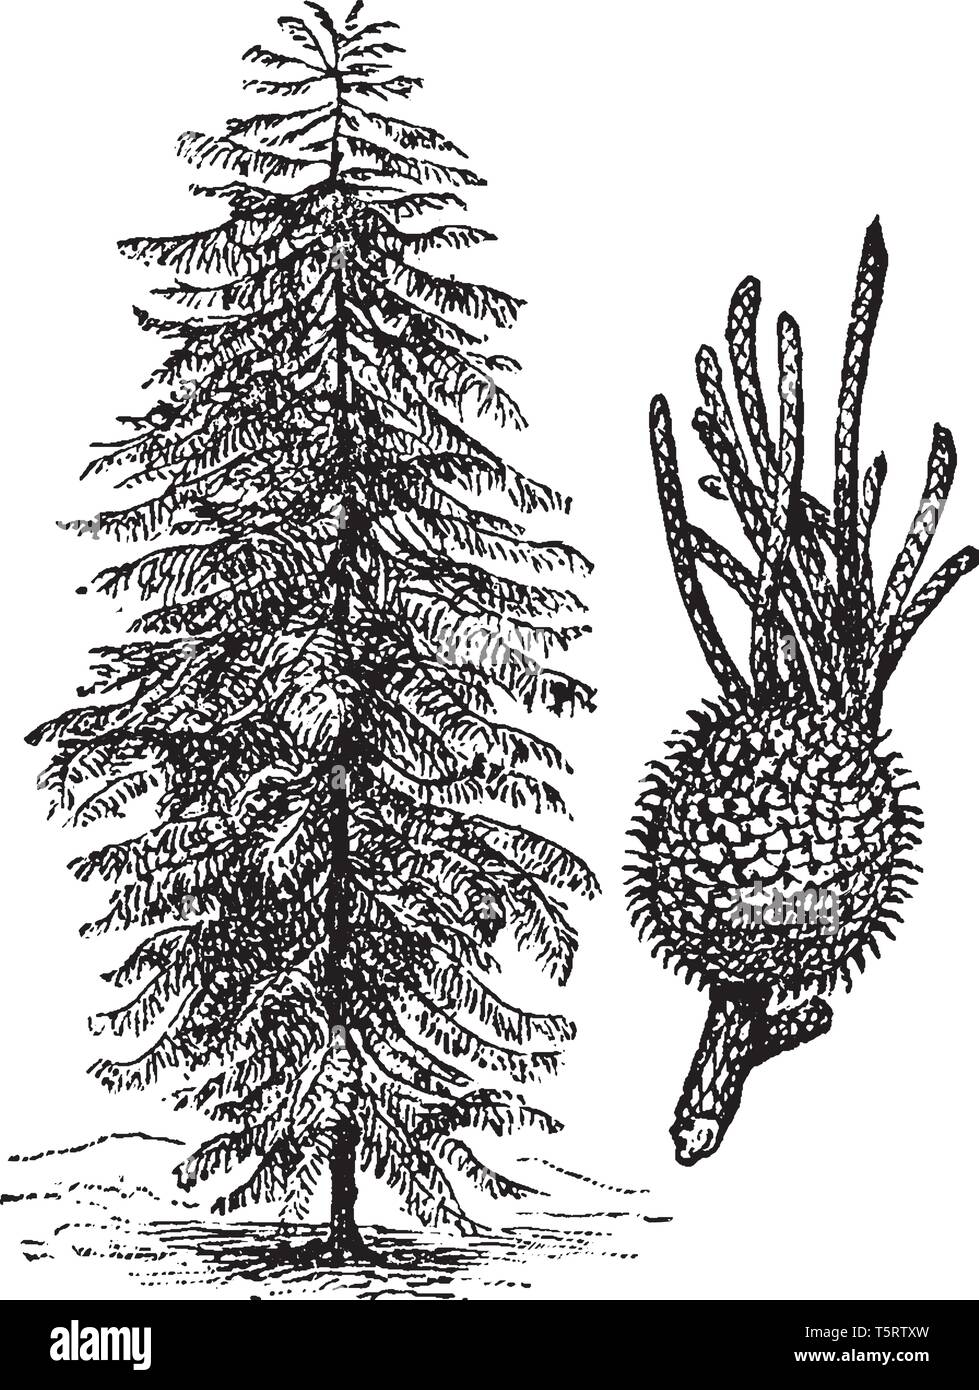 L'île Norfolk pine est une plante vasculaire Araucaria heterophylla nommé. La croissance des arbres à une hauteur de 50-65 m, avec des troncs et sym Illustration de Vecteur